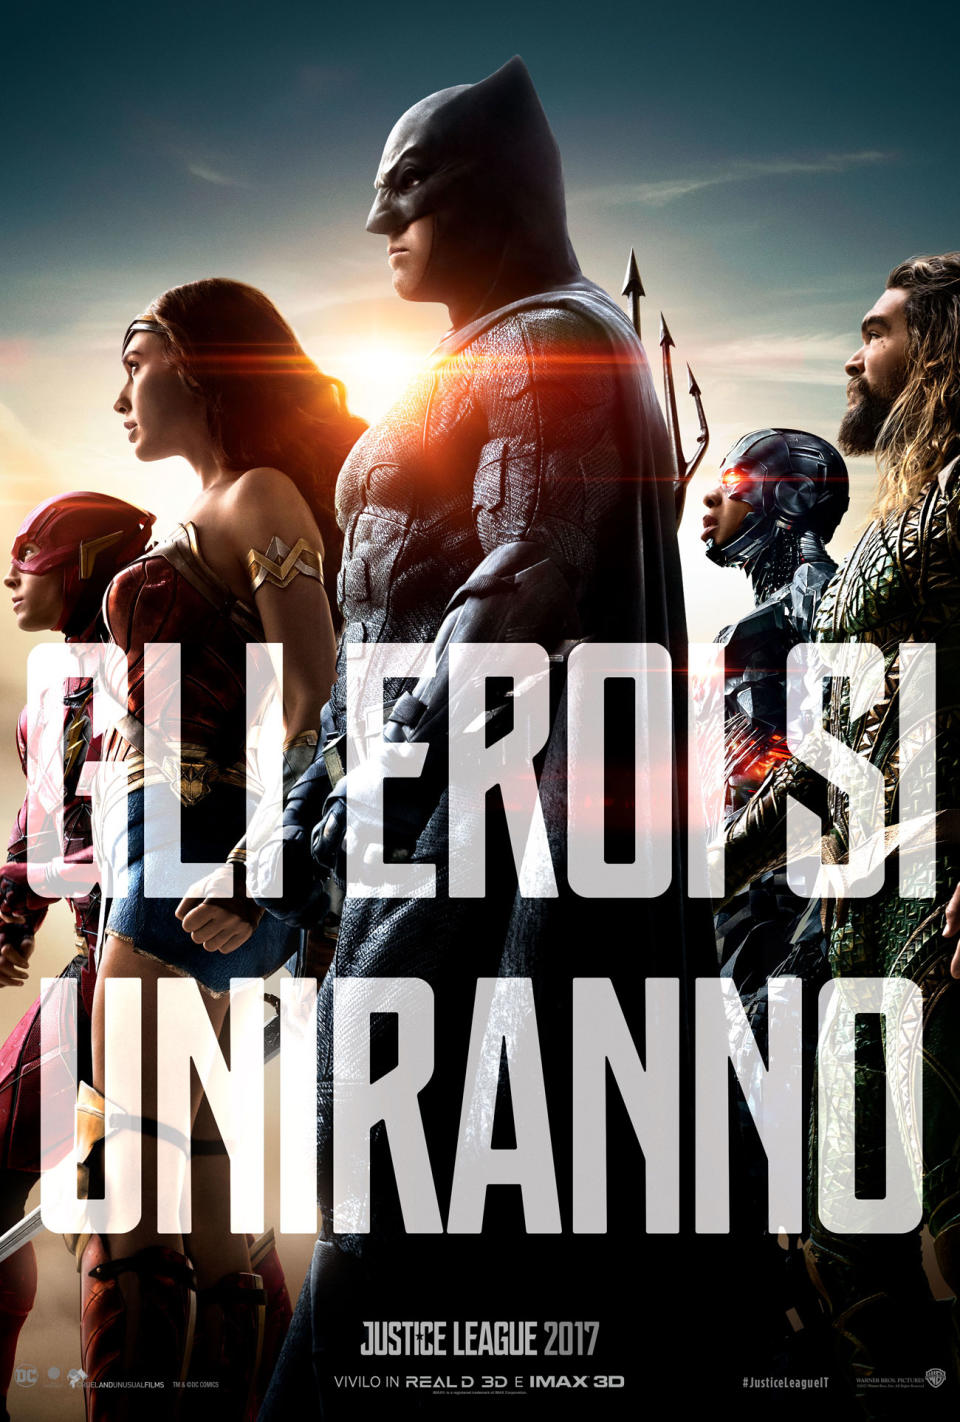 Il poster italiano di “Justice League”